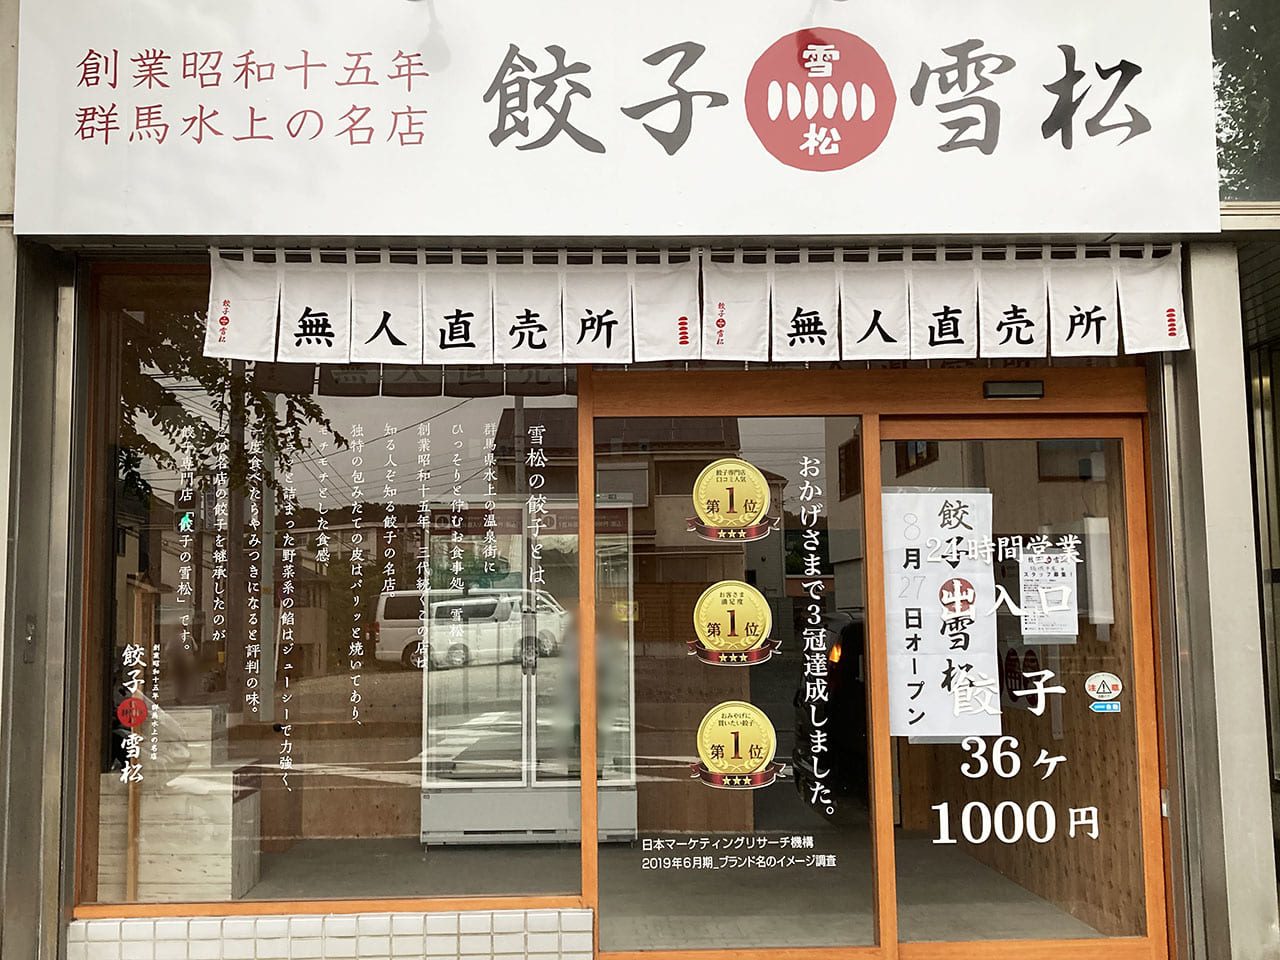 24時間営業の餃子専門店 創業昭和15年「餃子の雪松」が平尾で新規オープン！